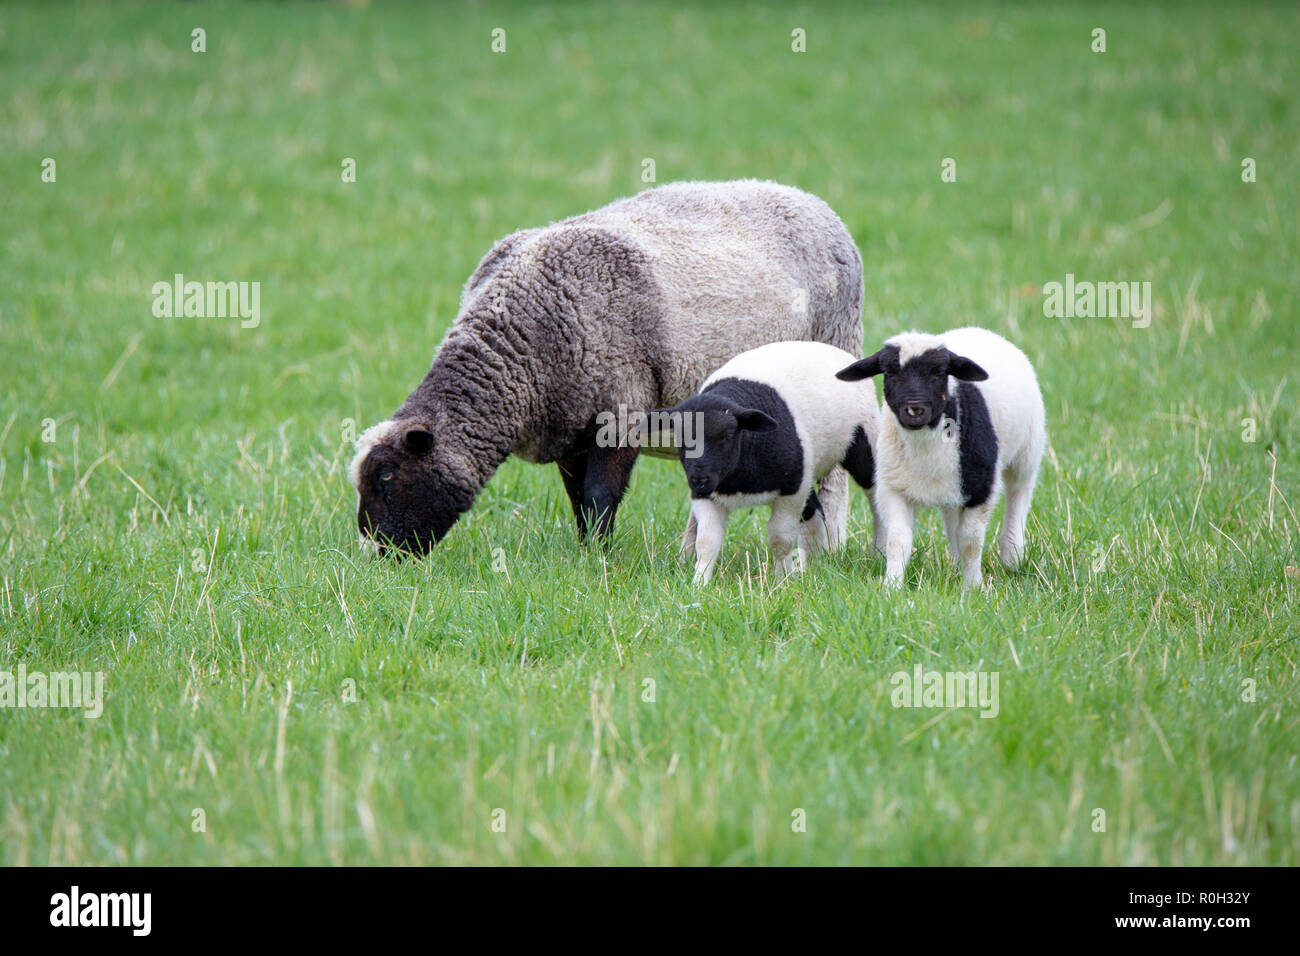 Un noir et blanc avec ses brebis agneaux noir et blanc sur une ferme au printemps Banque D'Images